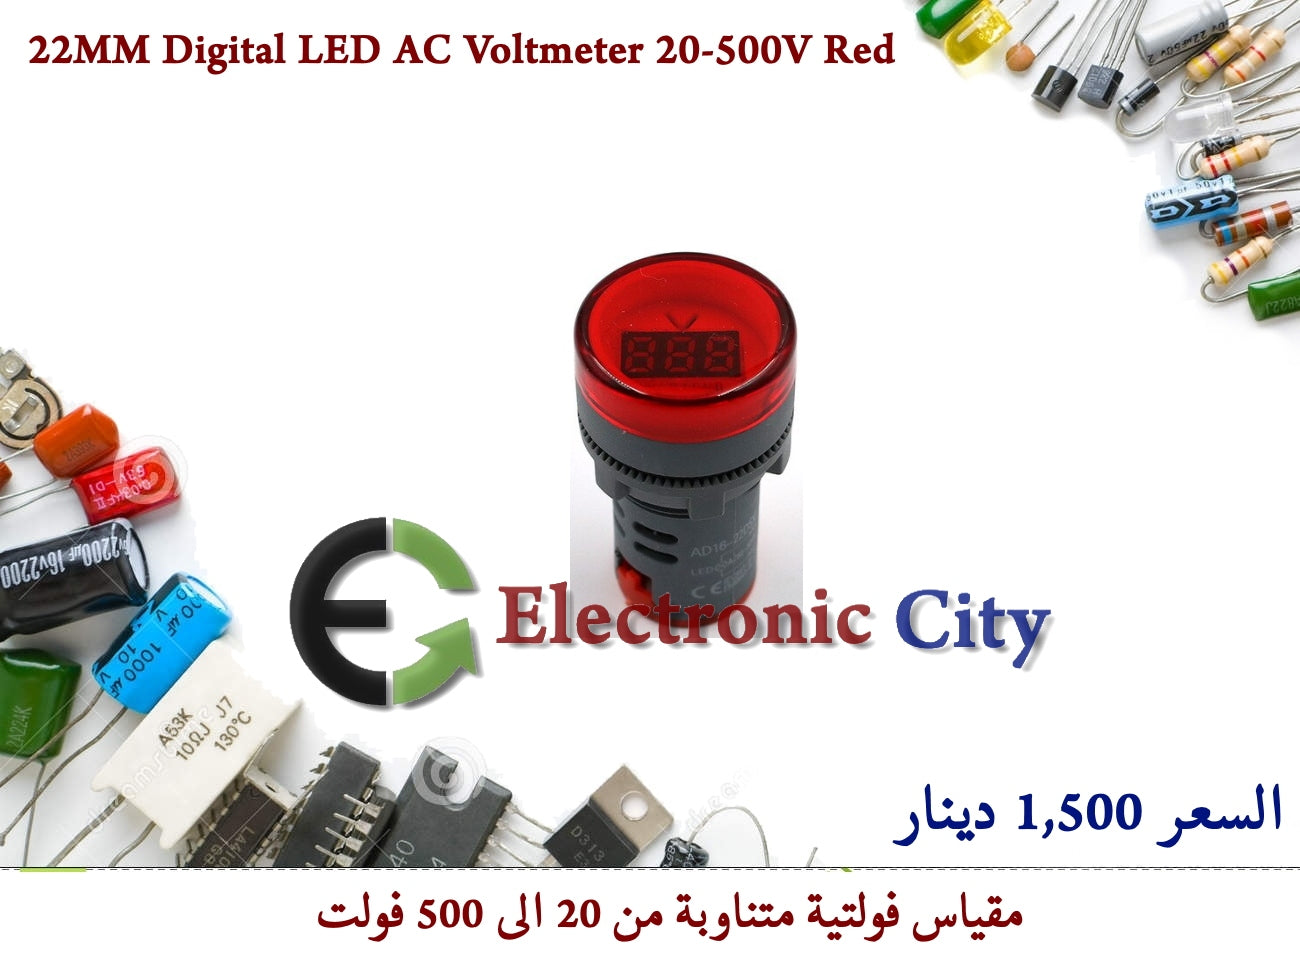 22MM Digital LED AC Voltmeter 20-500V Red